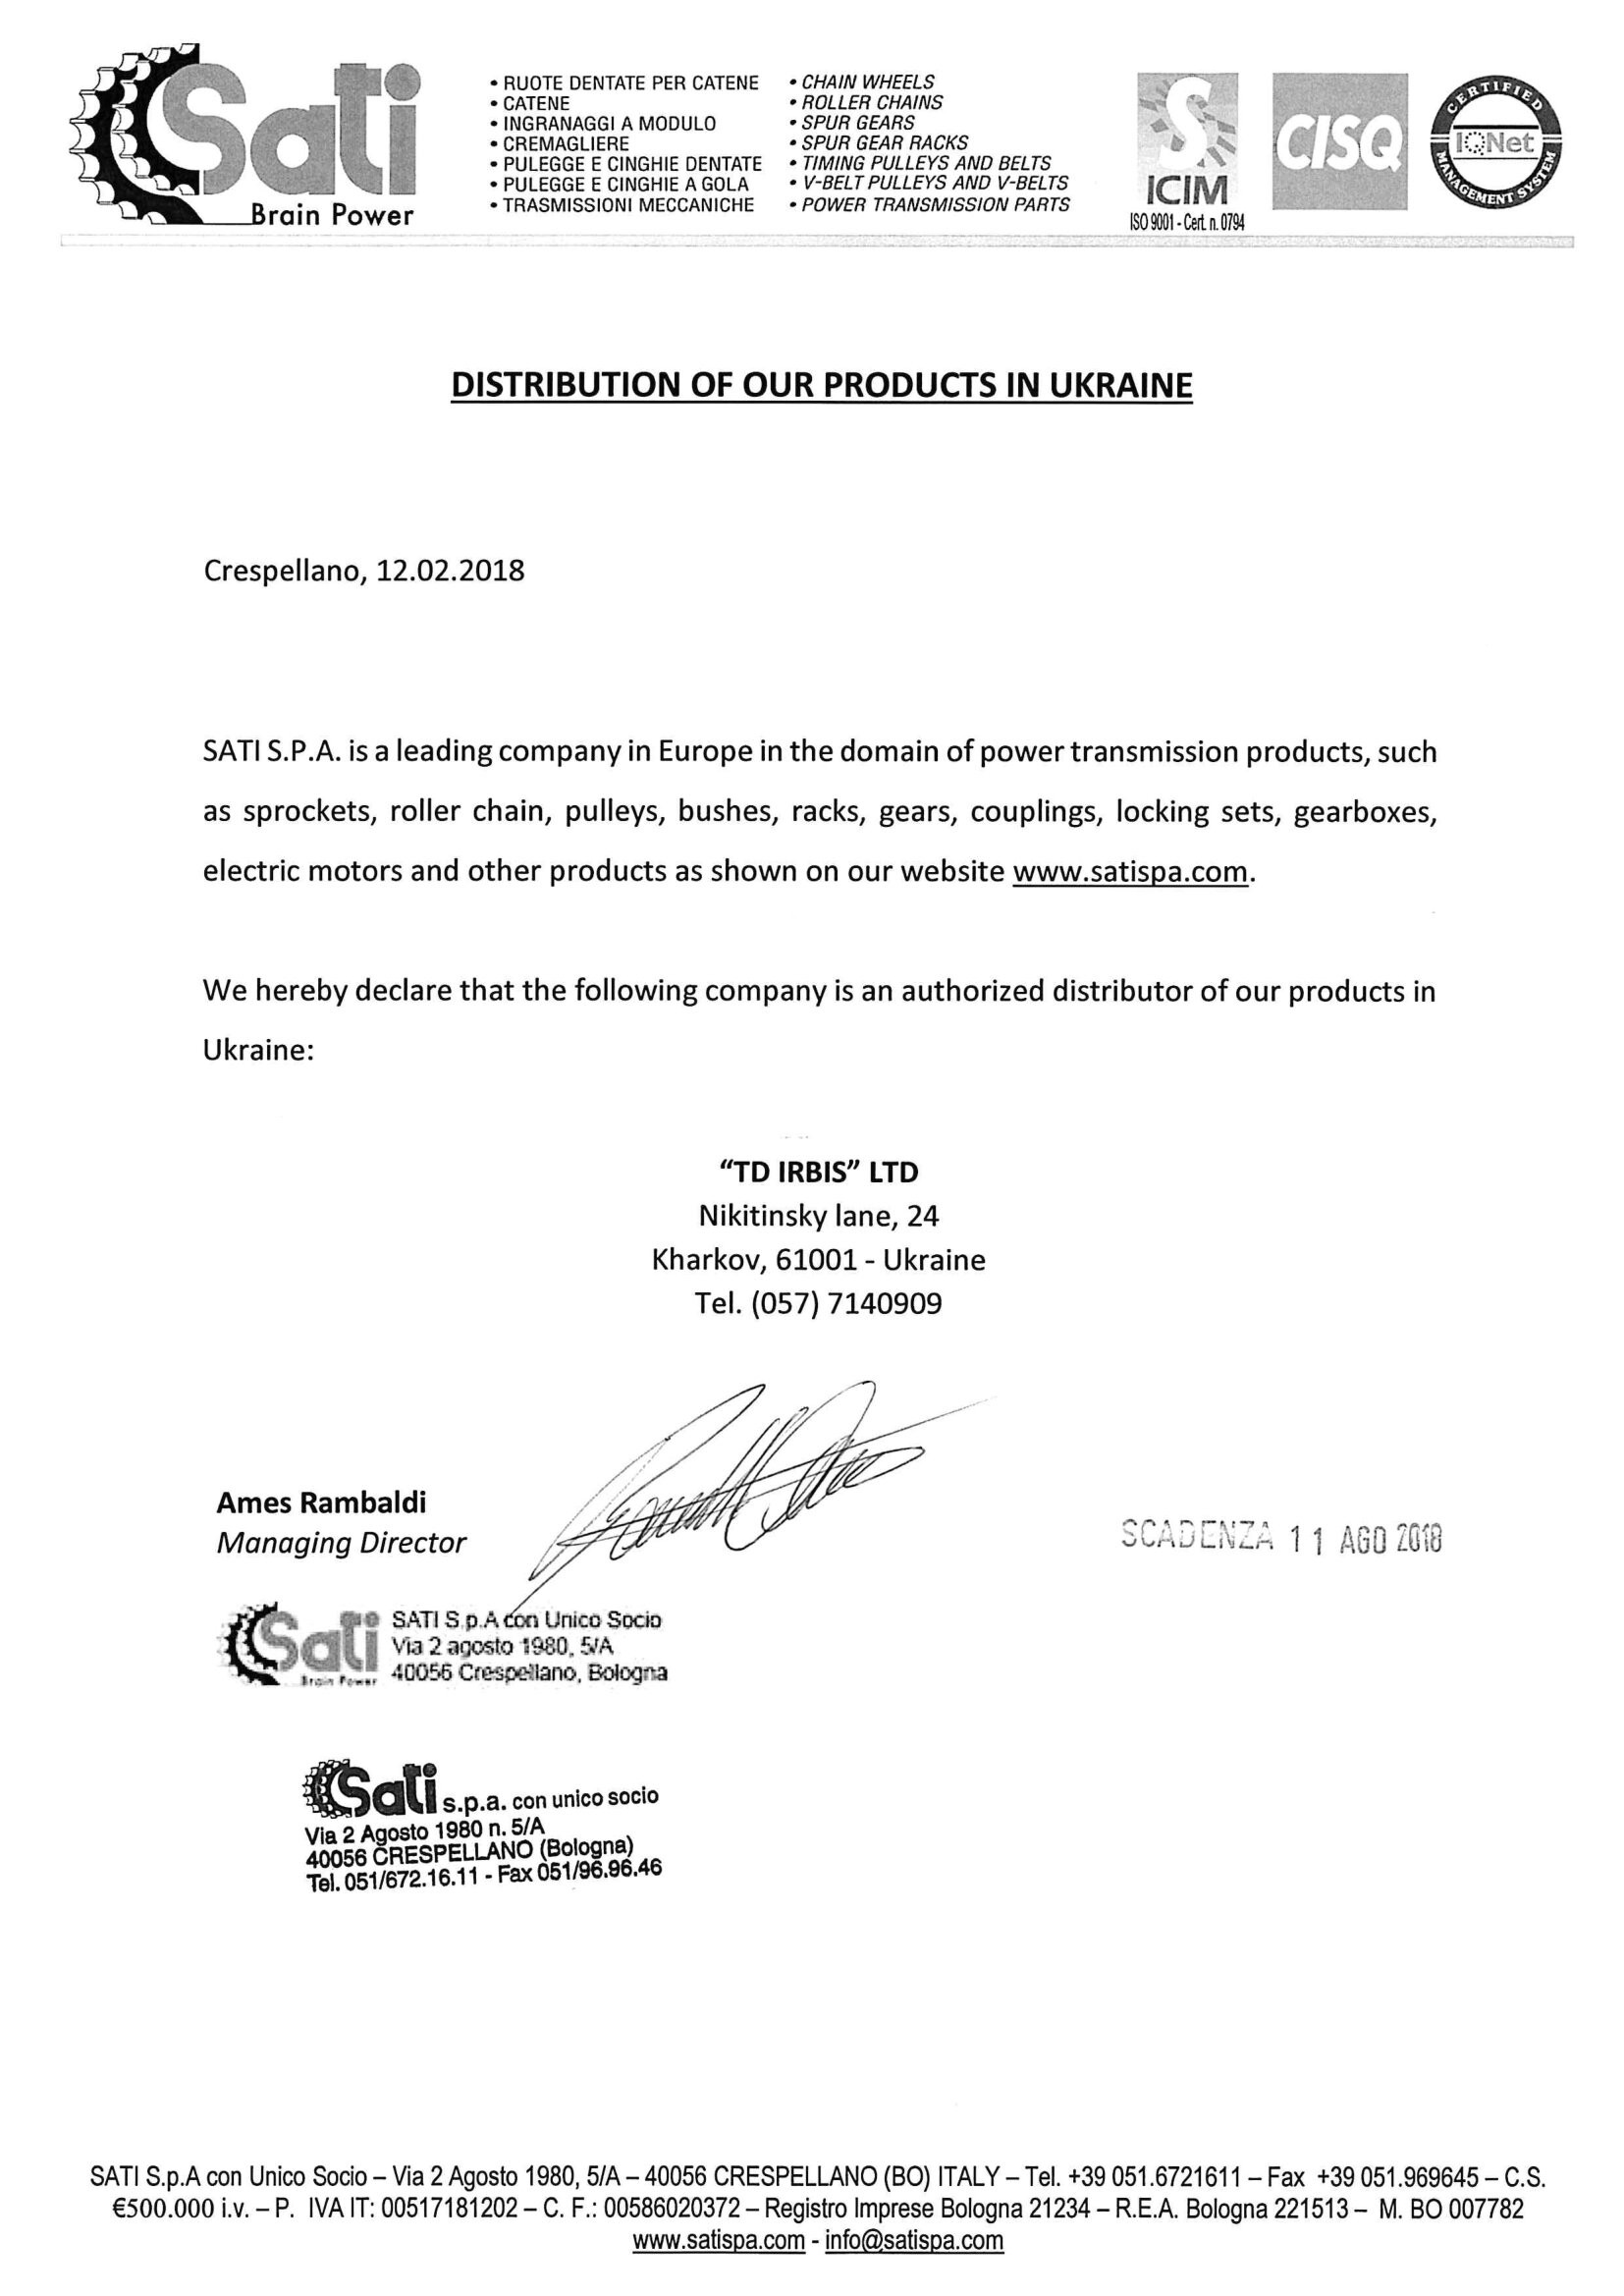 Сертифікат дистрибуції SATI